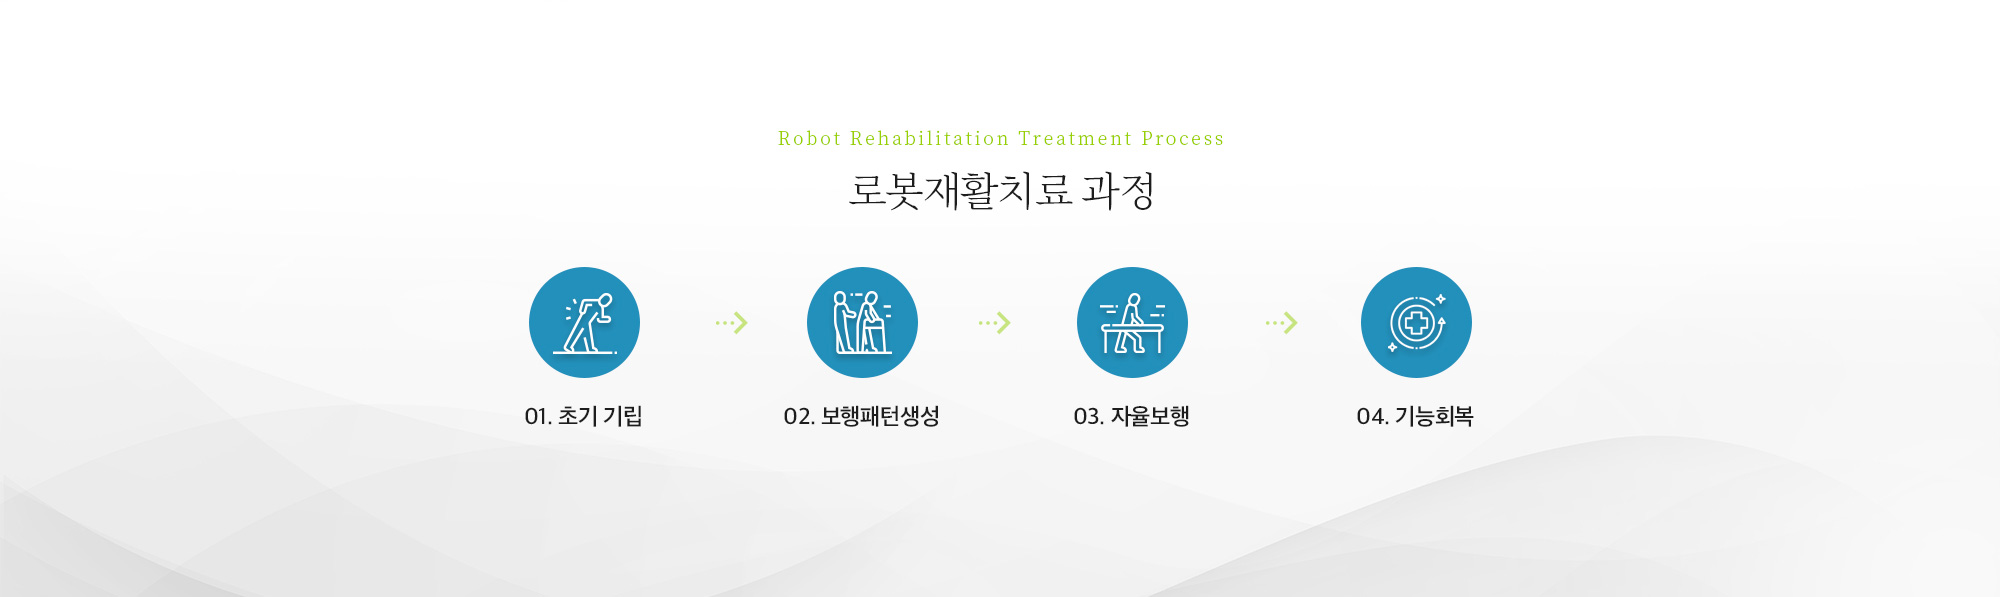 로봇재활치료 과정